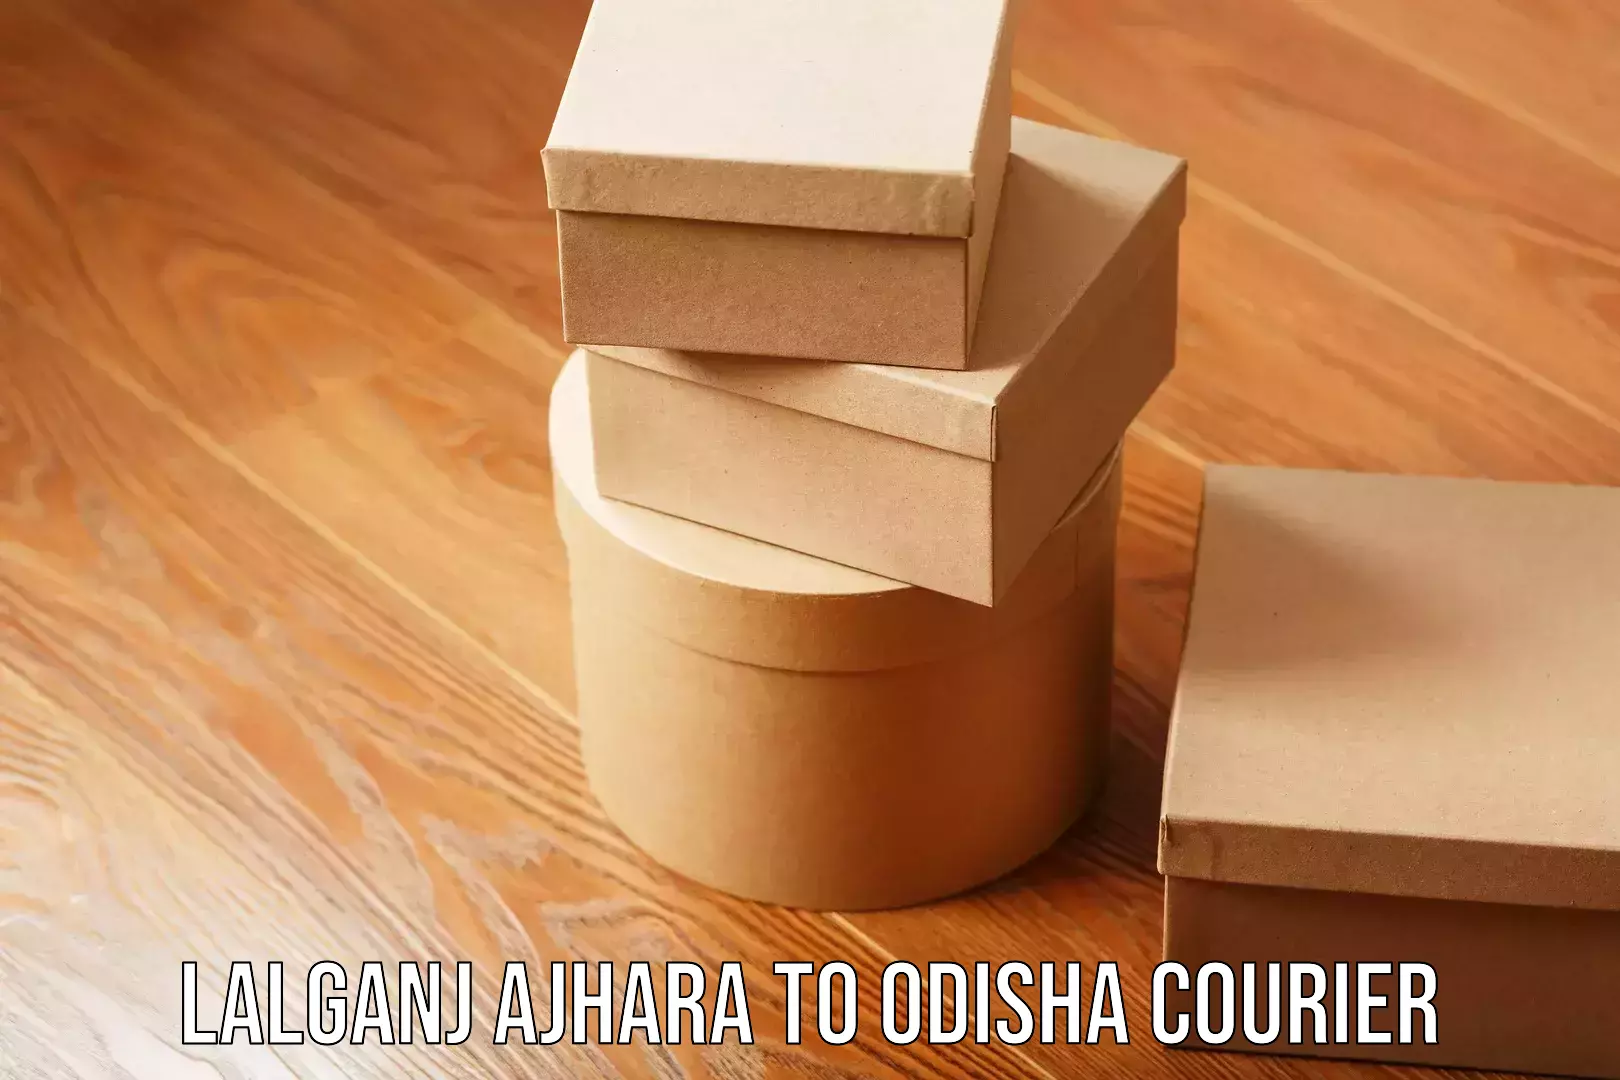 Efficient moving company Lalganj Ajhara to Odisha